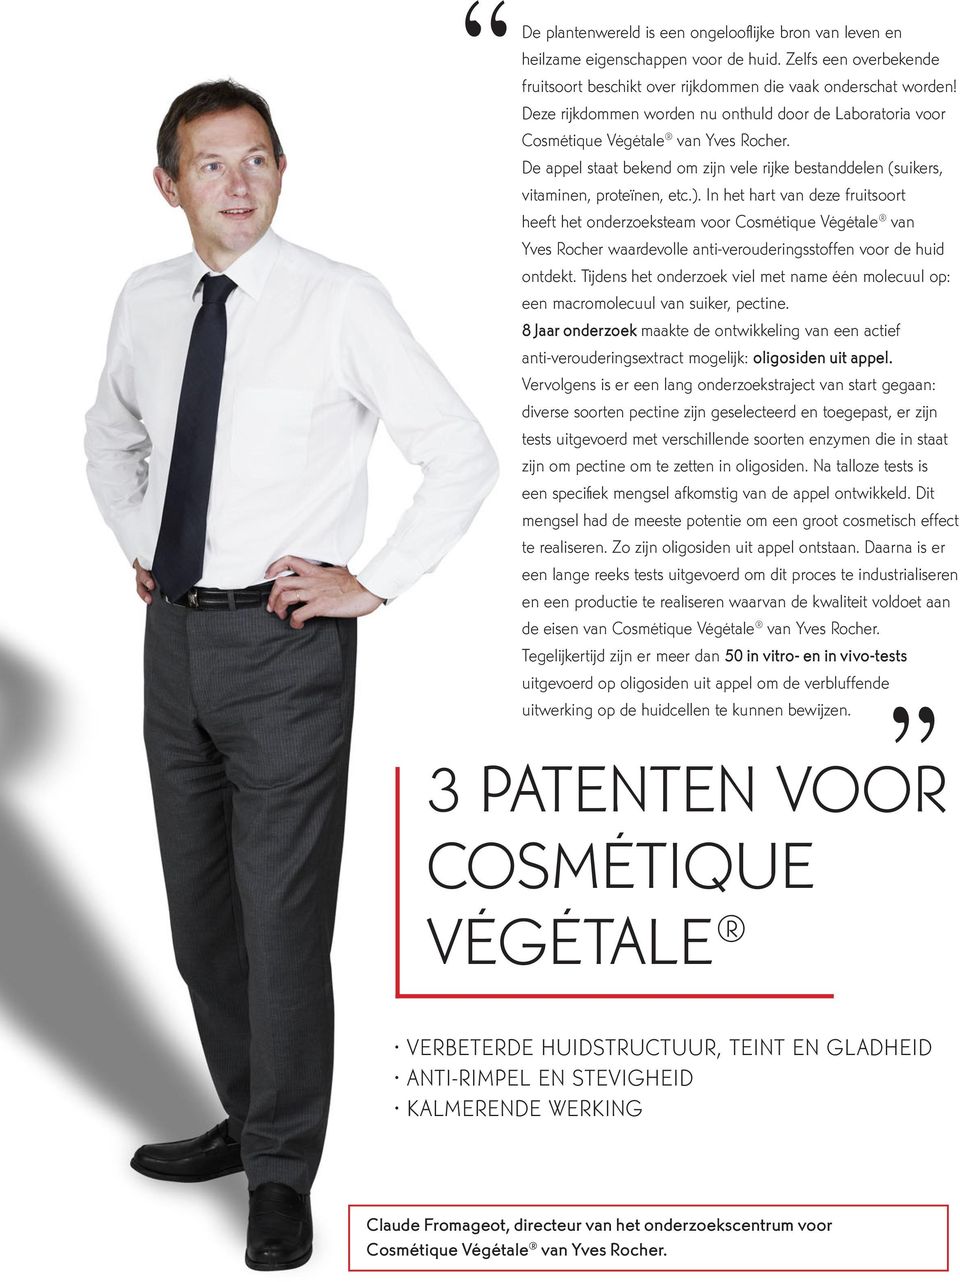 In het hart van deze fruitsoort heeft het onderzoeksteam voor Cosmétique Végétale van Yves Rocher waardevolle anti-verouderingsstoffen voor de huid ontdekt.